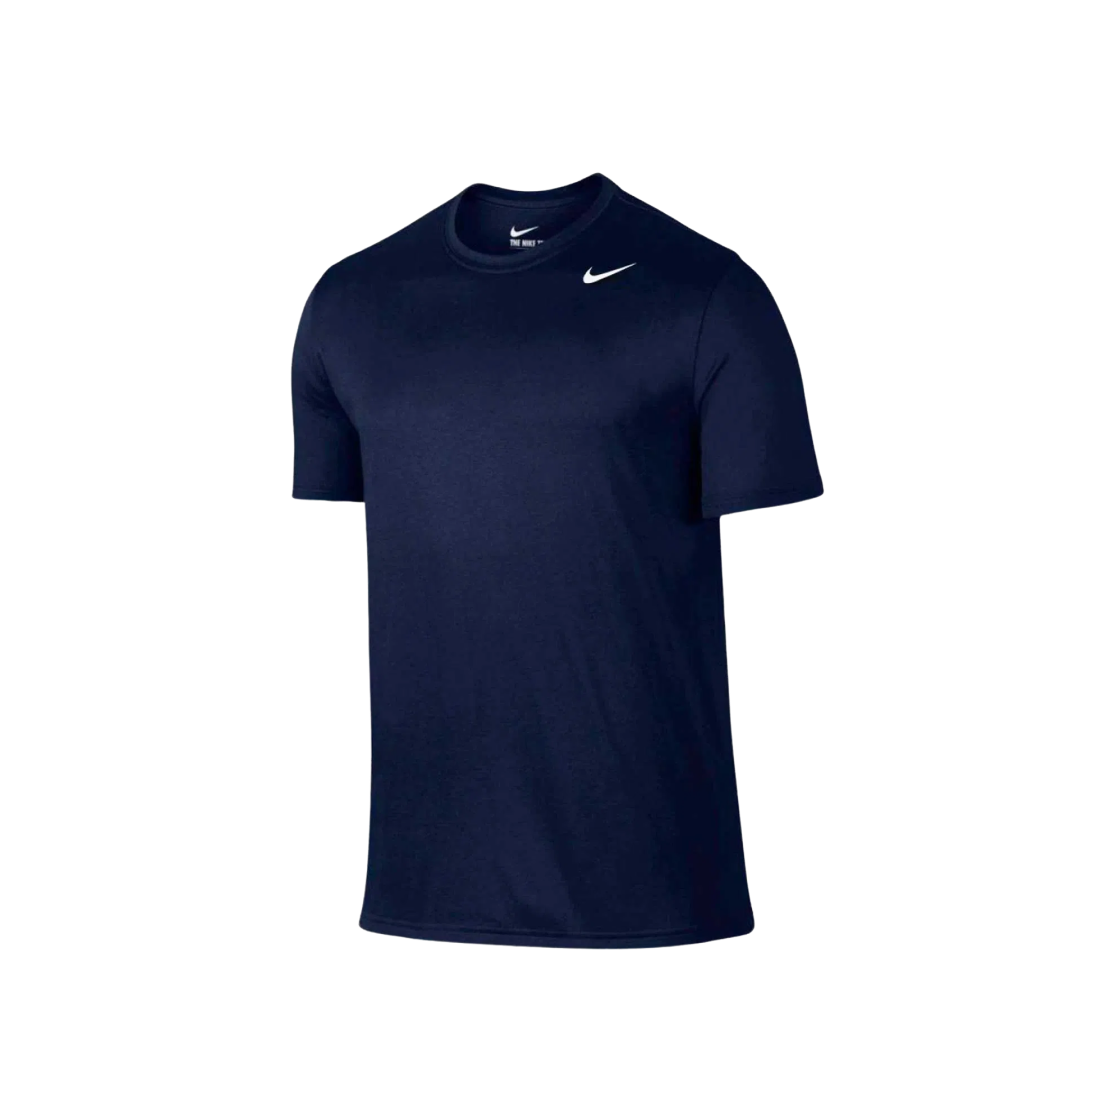 나이키 드라이핏 레전드 티셔츠 네이비 - 아시아 718834-451